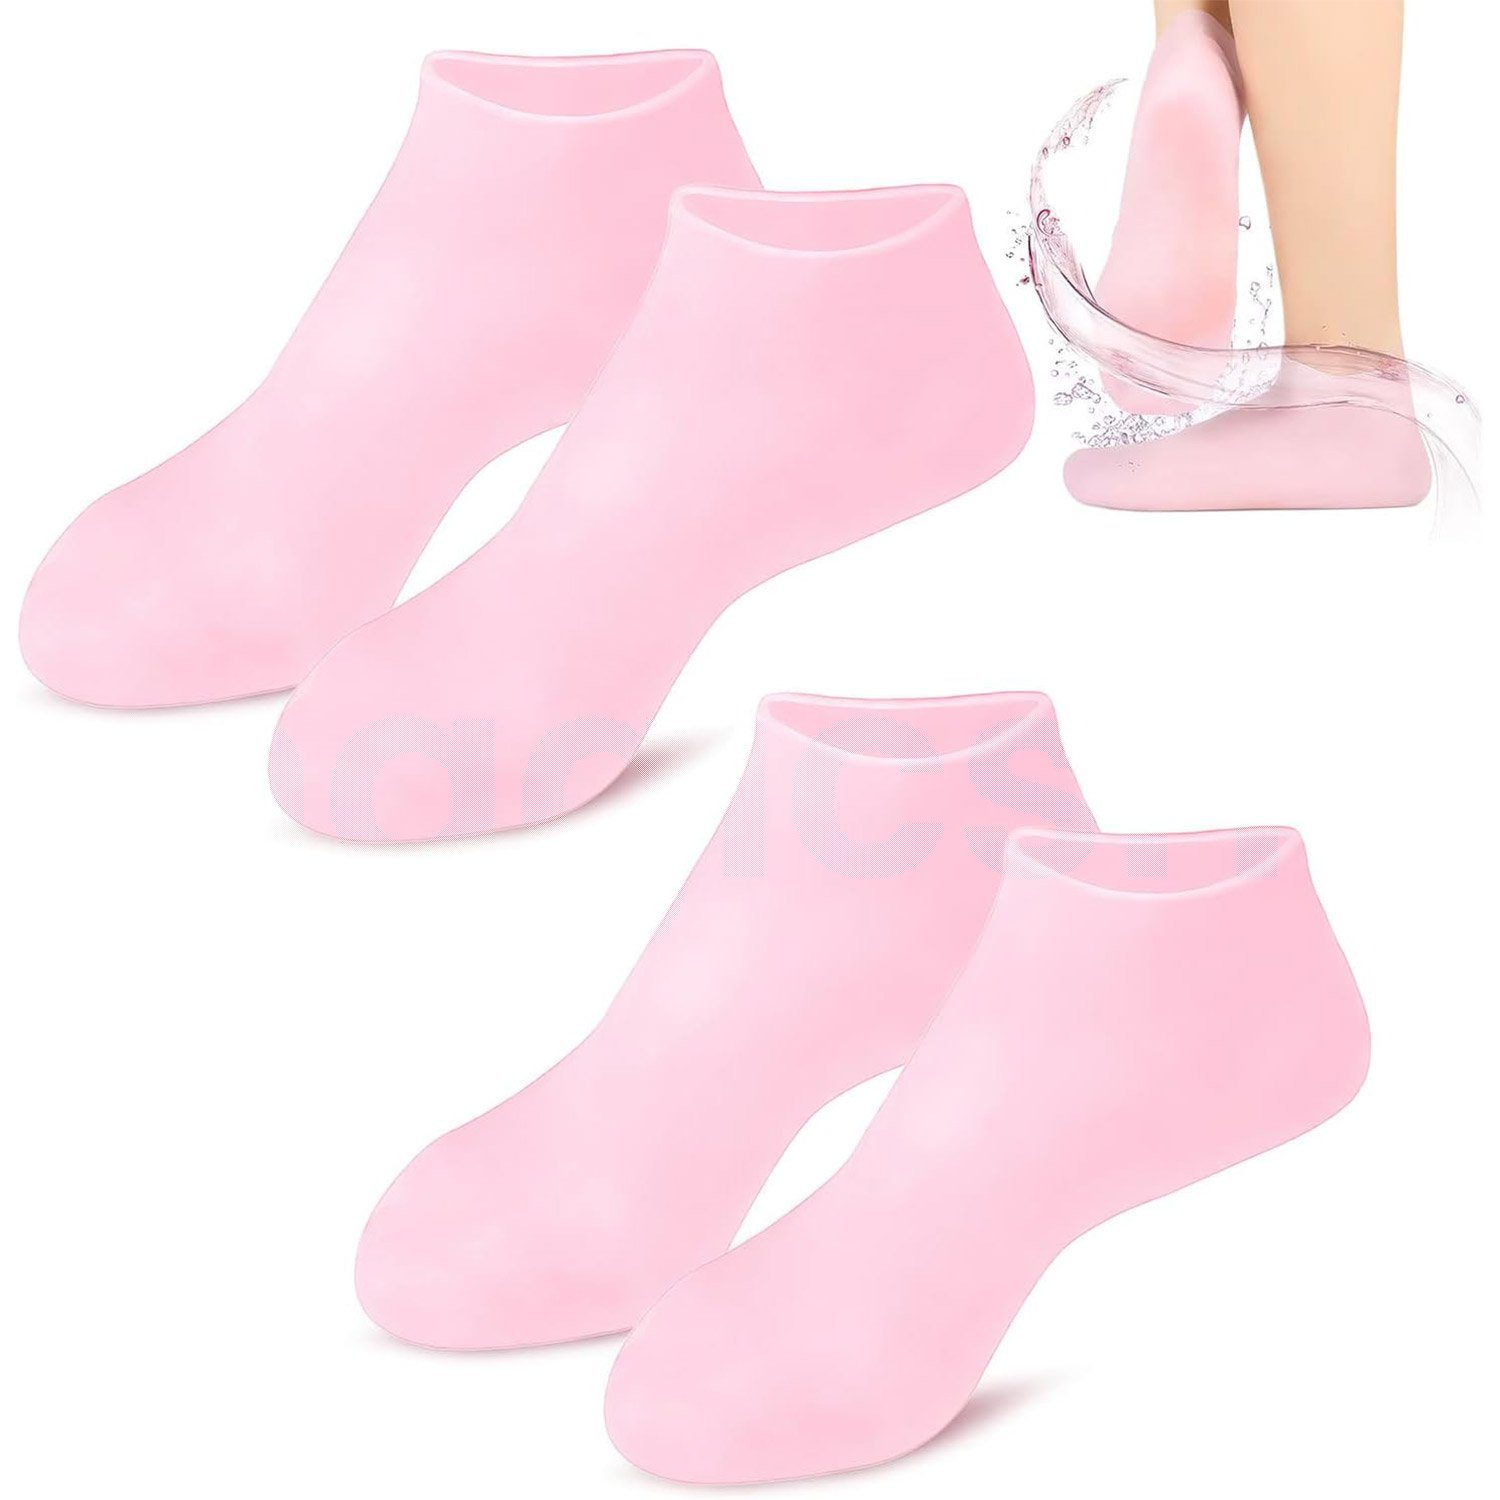 MAGICSHE Funktionssocken 2 Paar Silikon-Feuchtigkeitssocken, Fußpflege für trockene rissige Füße